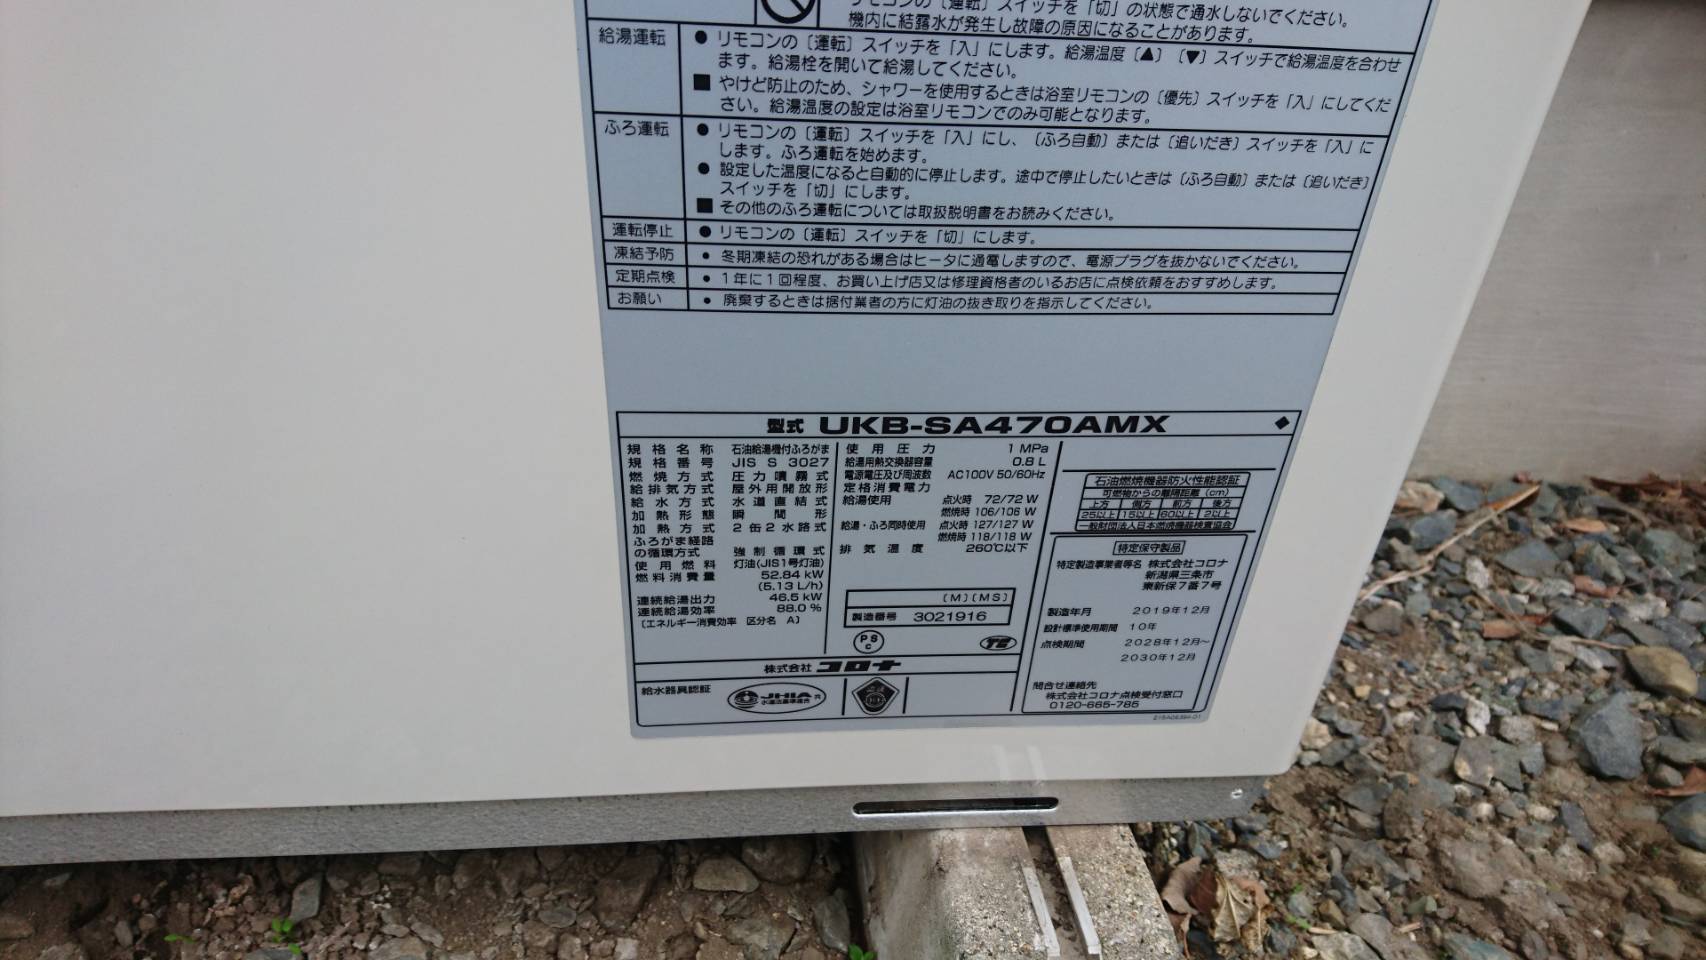 袖ヶ浦市暖房機修理 コロナ石油給湯器交換 Ukb Sa470amx 千葉給湯器交換サービス